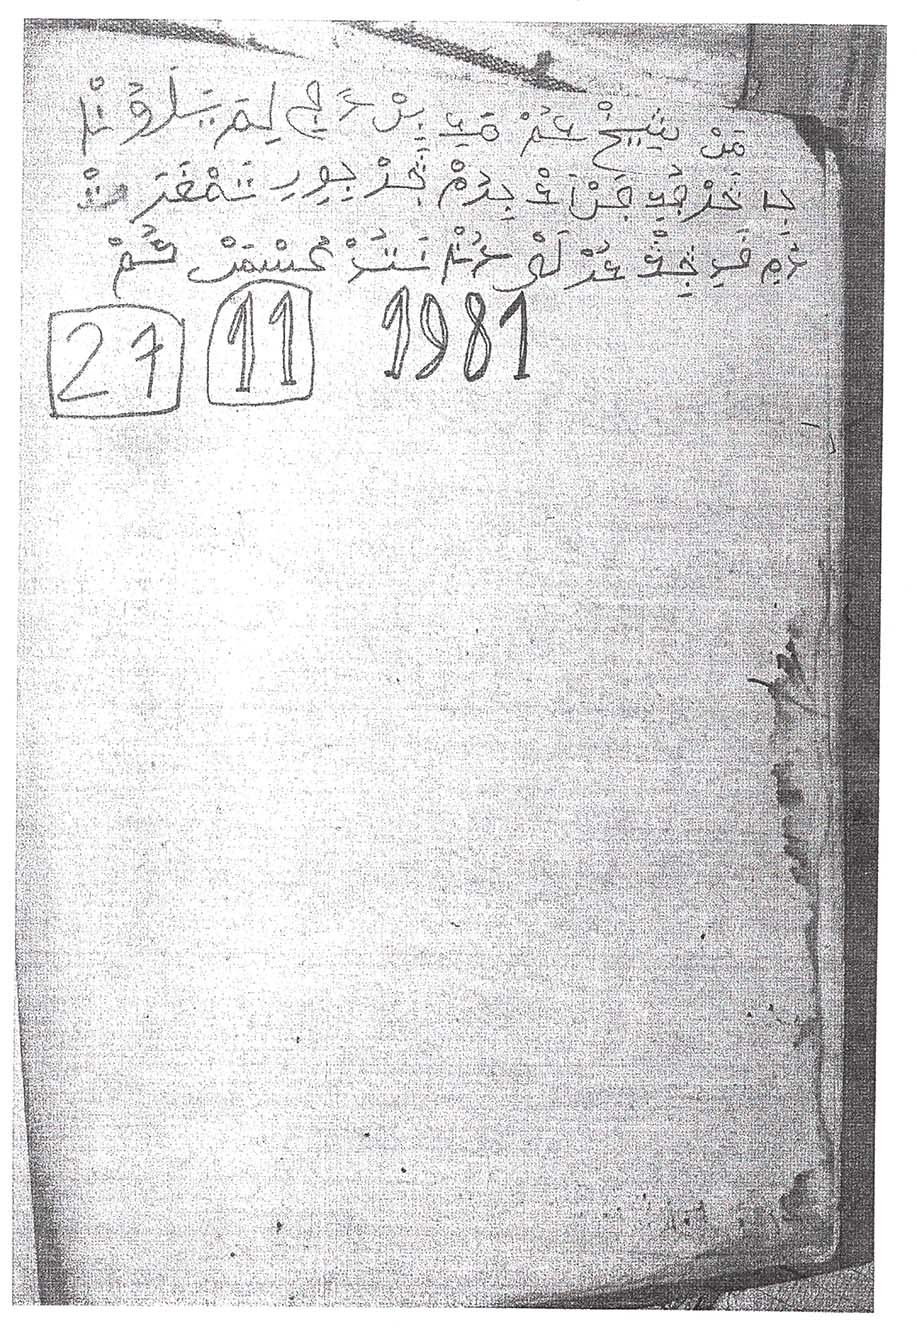 Ajami script above Arabic numerals in boxes: 27, 11, then 1981. 